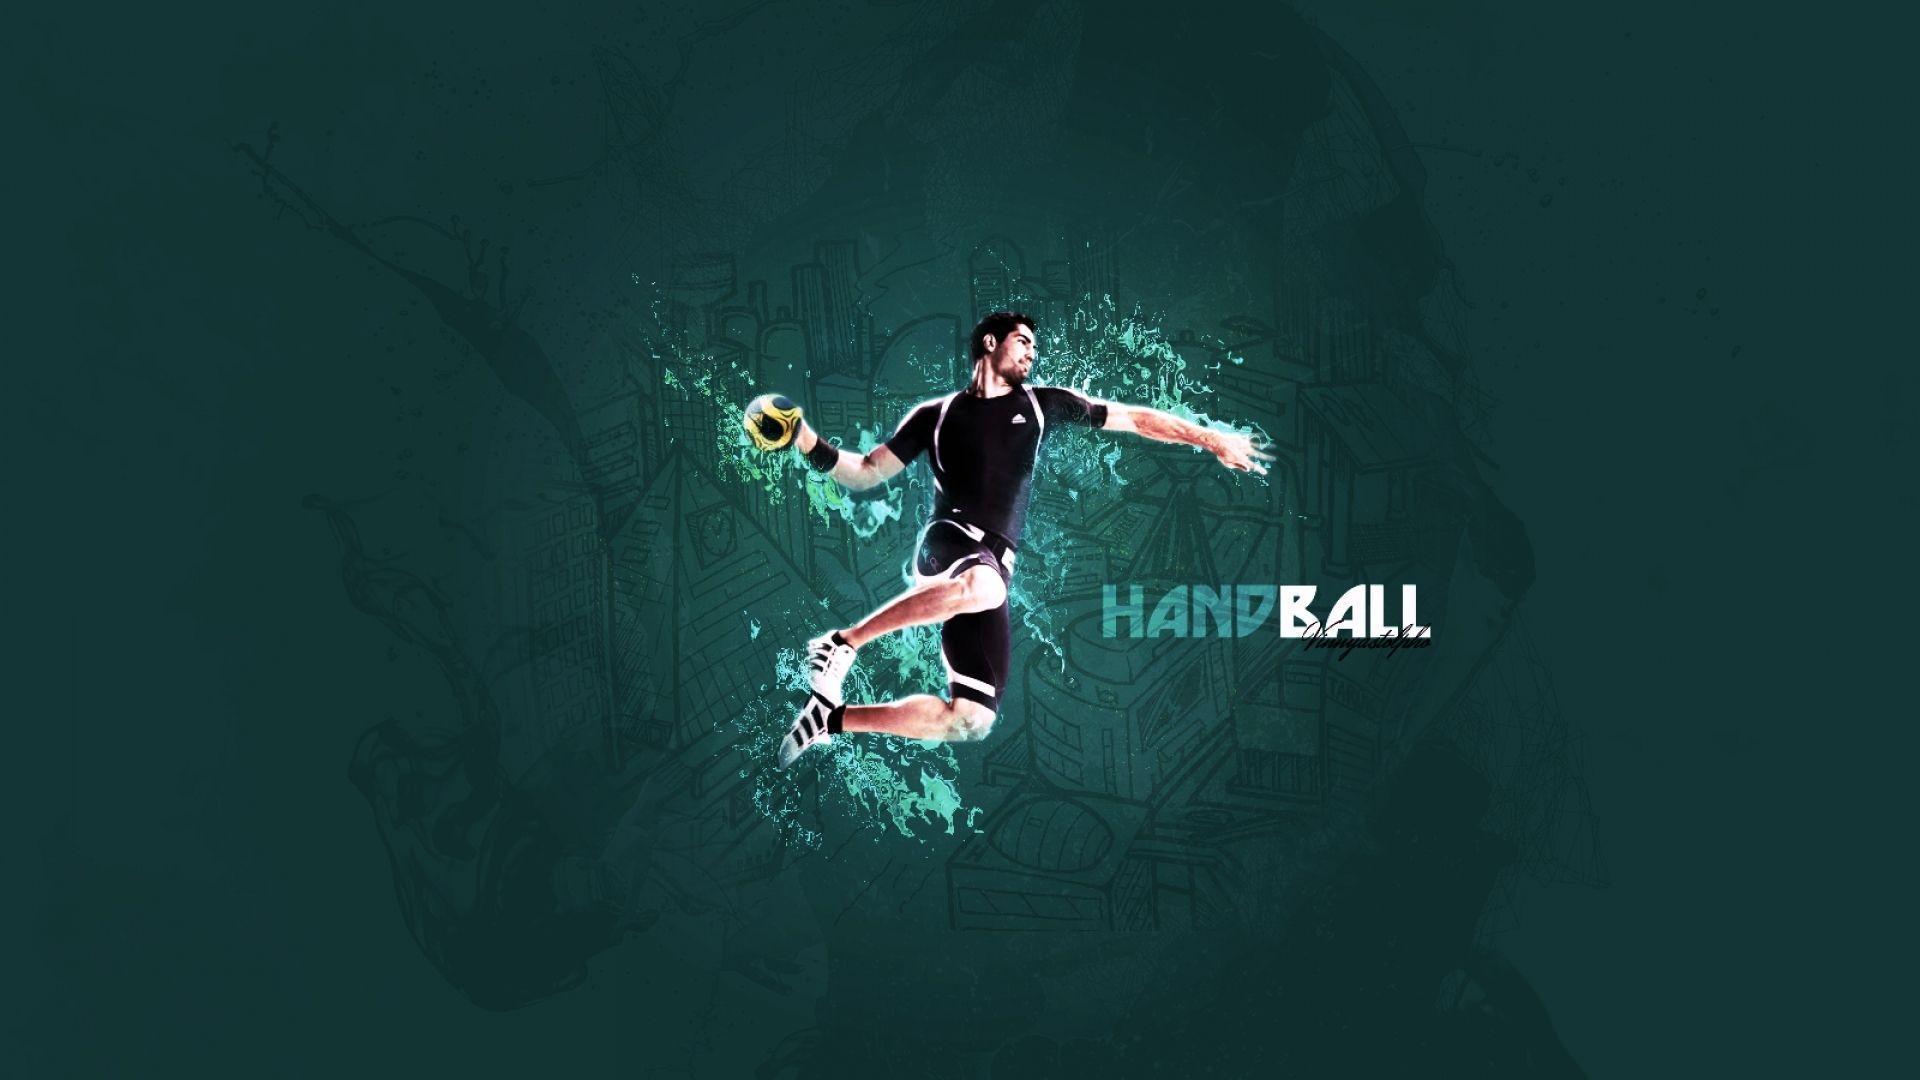  Handball Hintergrundbild 1920x1080. Handball Wallpaper Free Handball Background